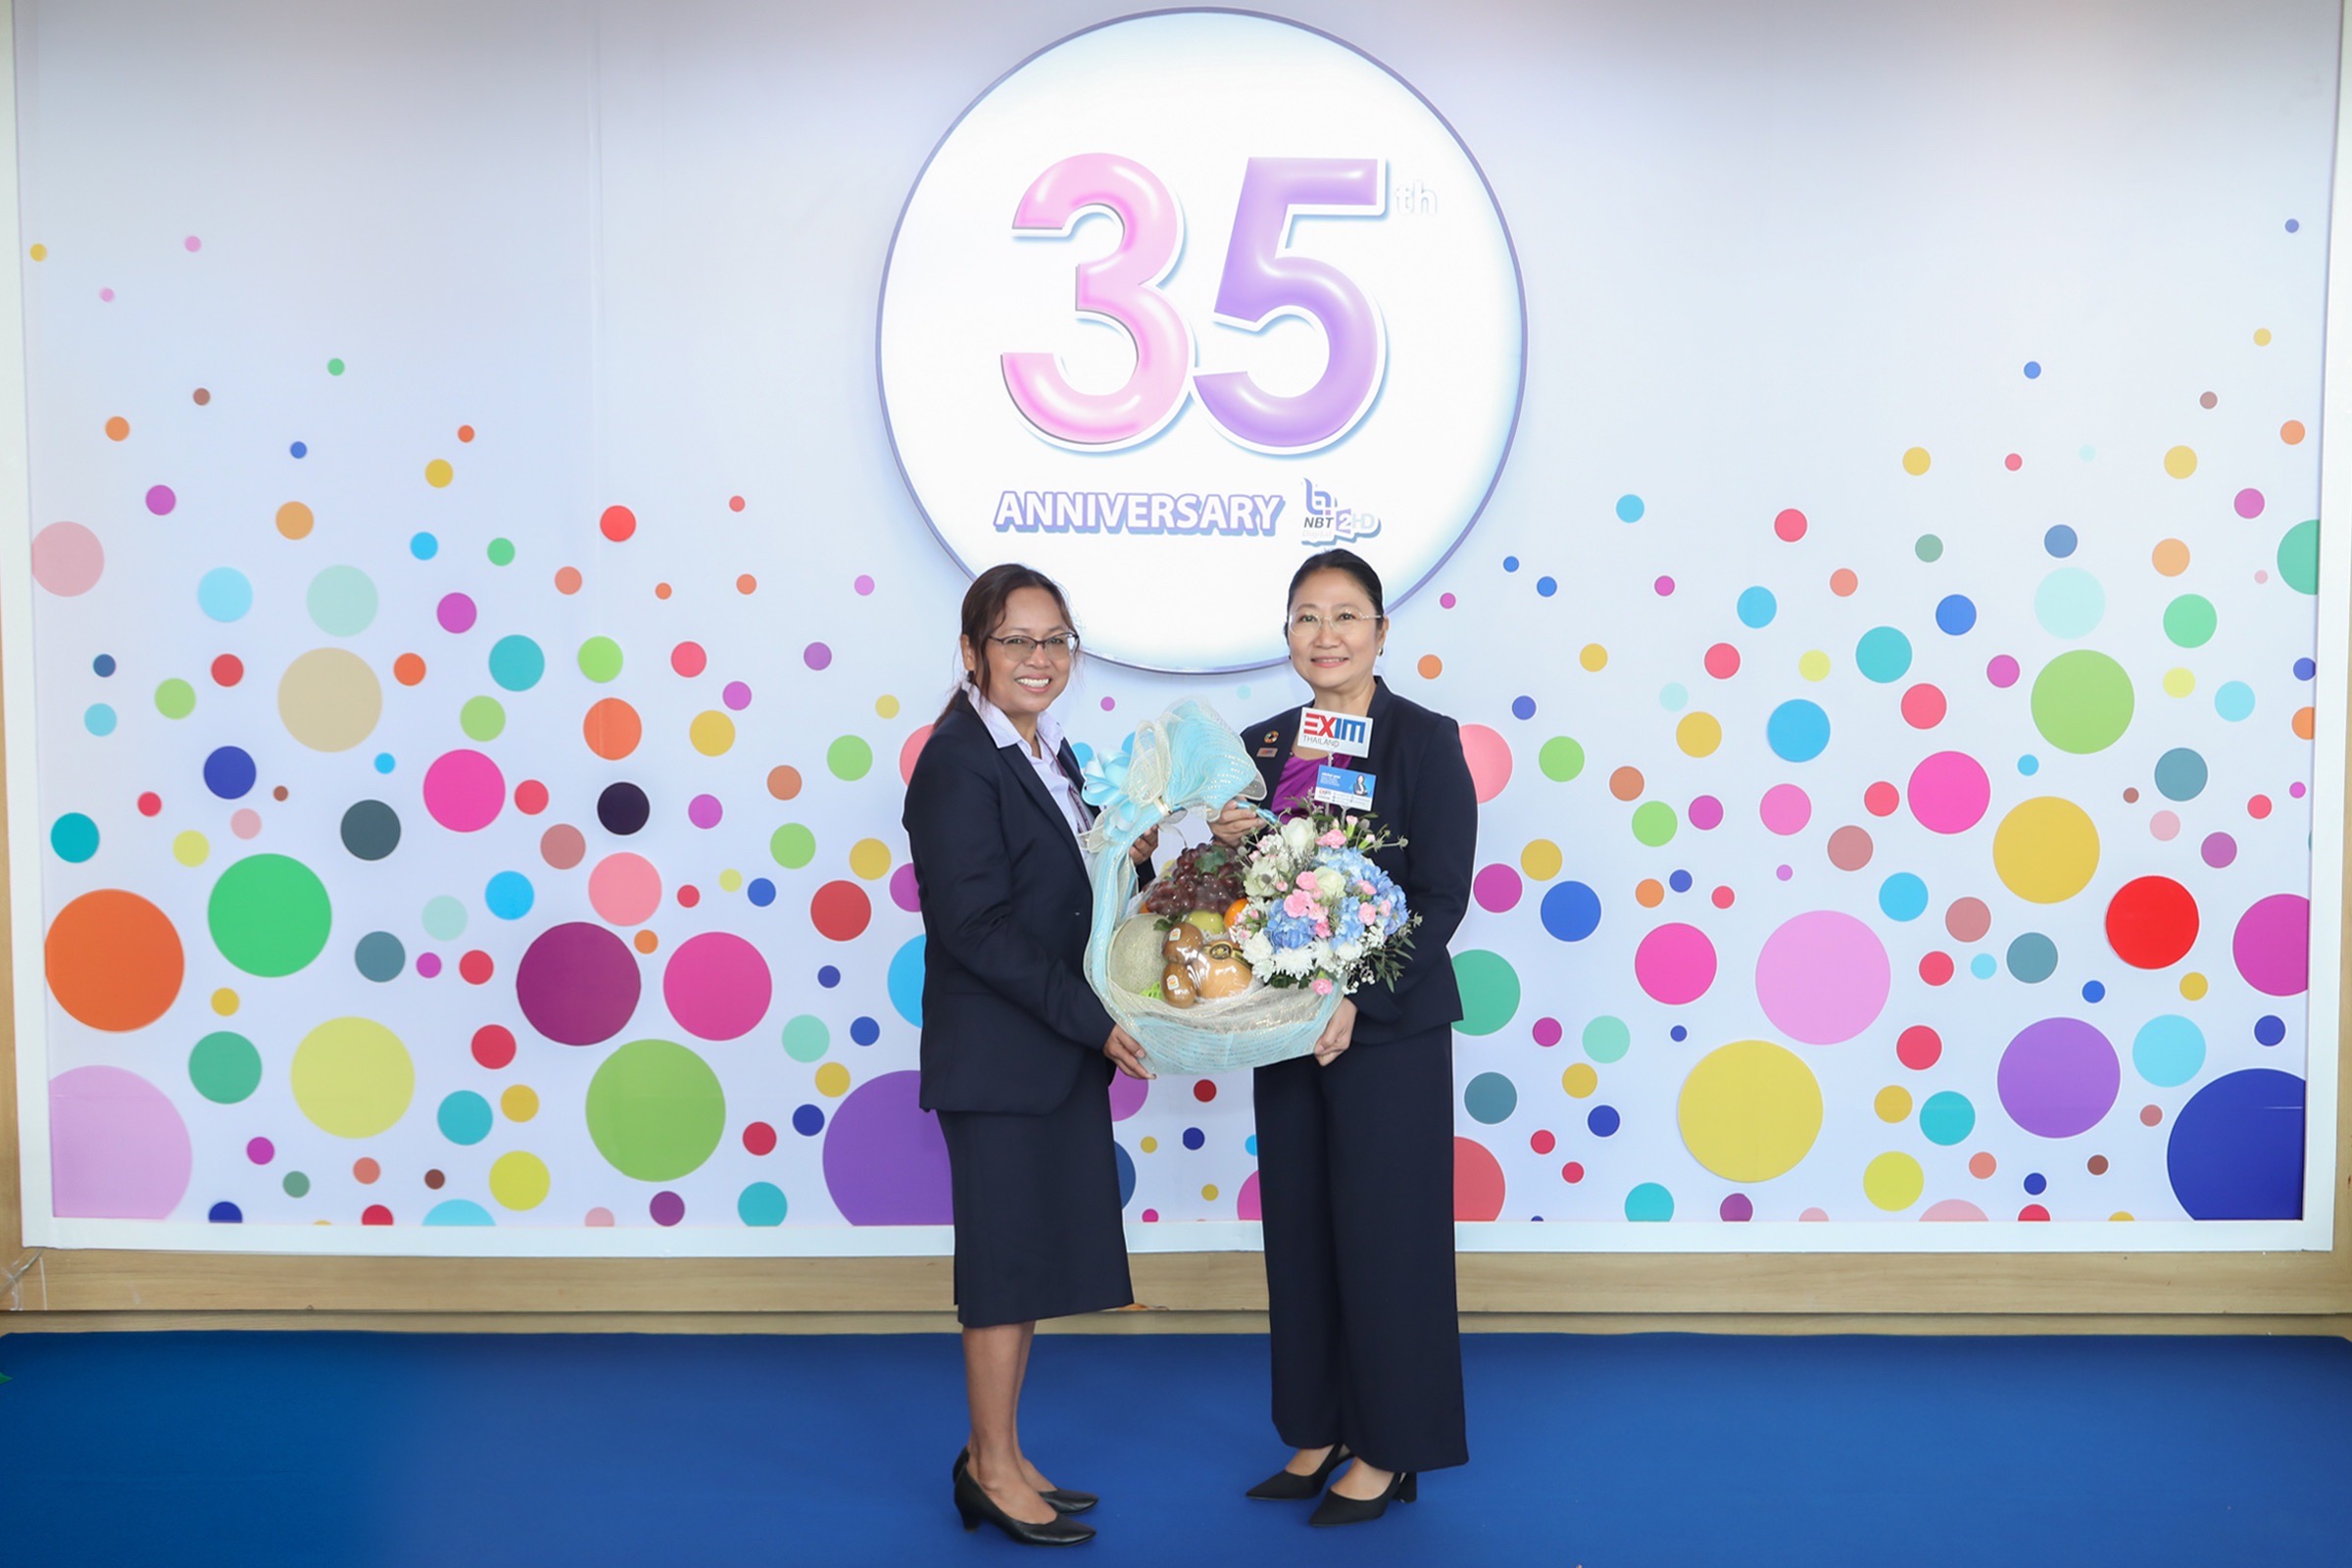 EXIM BANK ร่วมยินดีโอกาสวันคล้ายวันก่อตั้งสถานีวิทยุโทรทัศน์แห่งประเทศไทย (NBT) ปีที่ 35